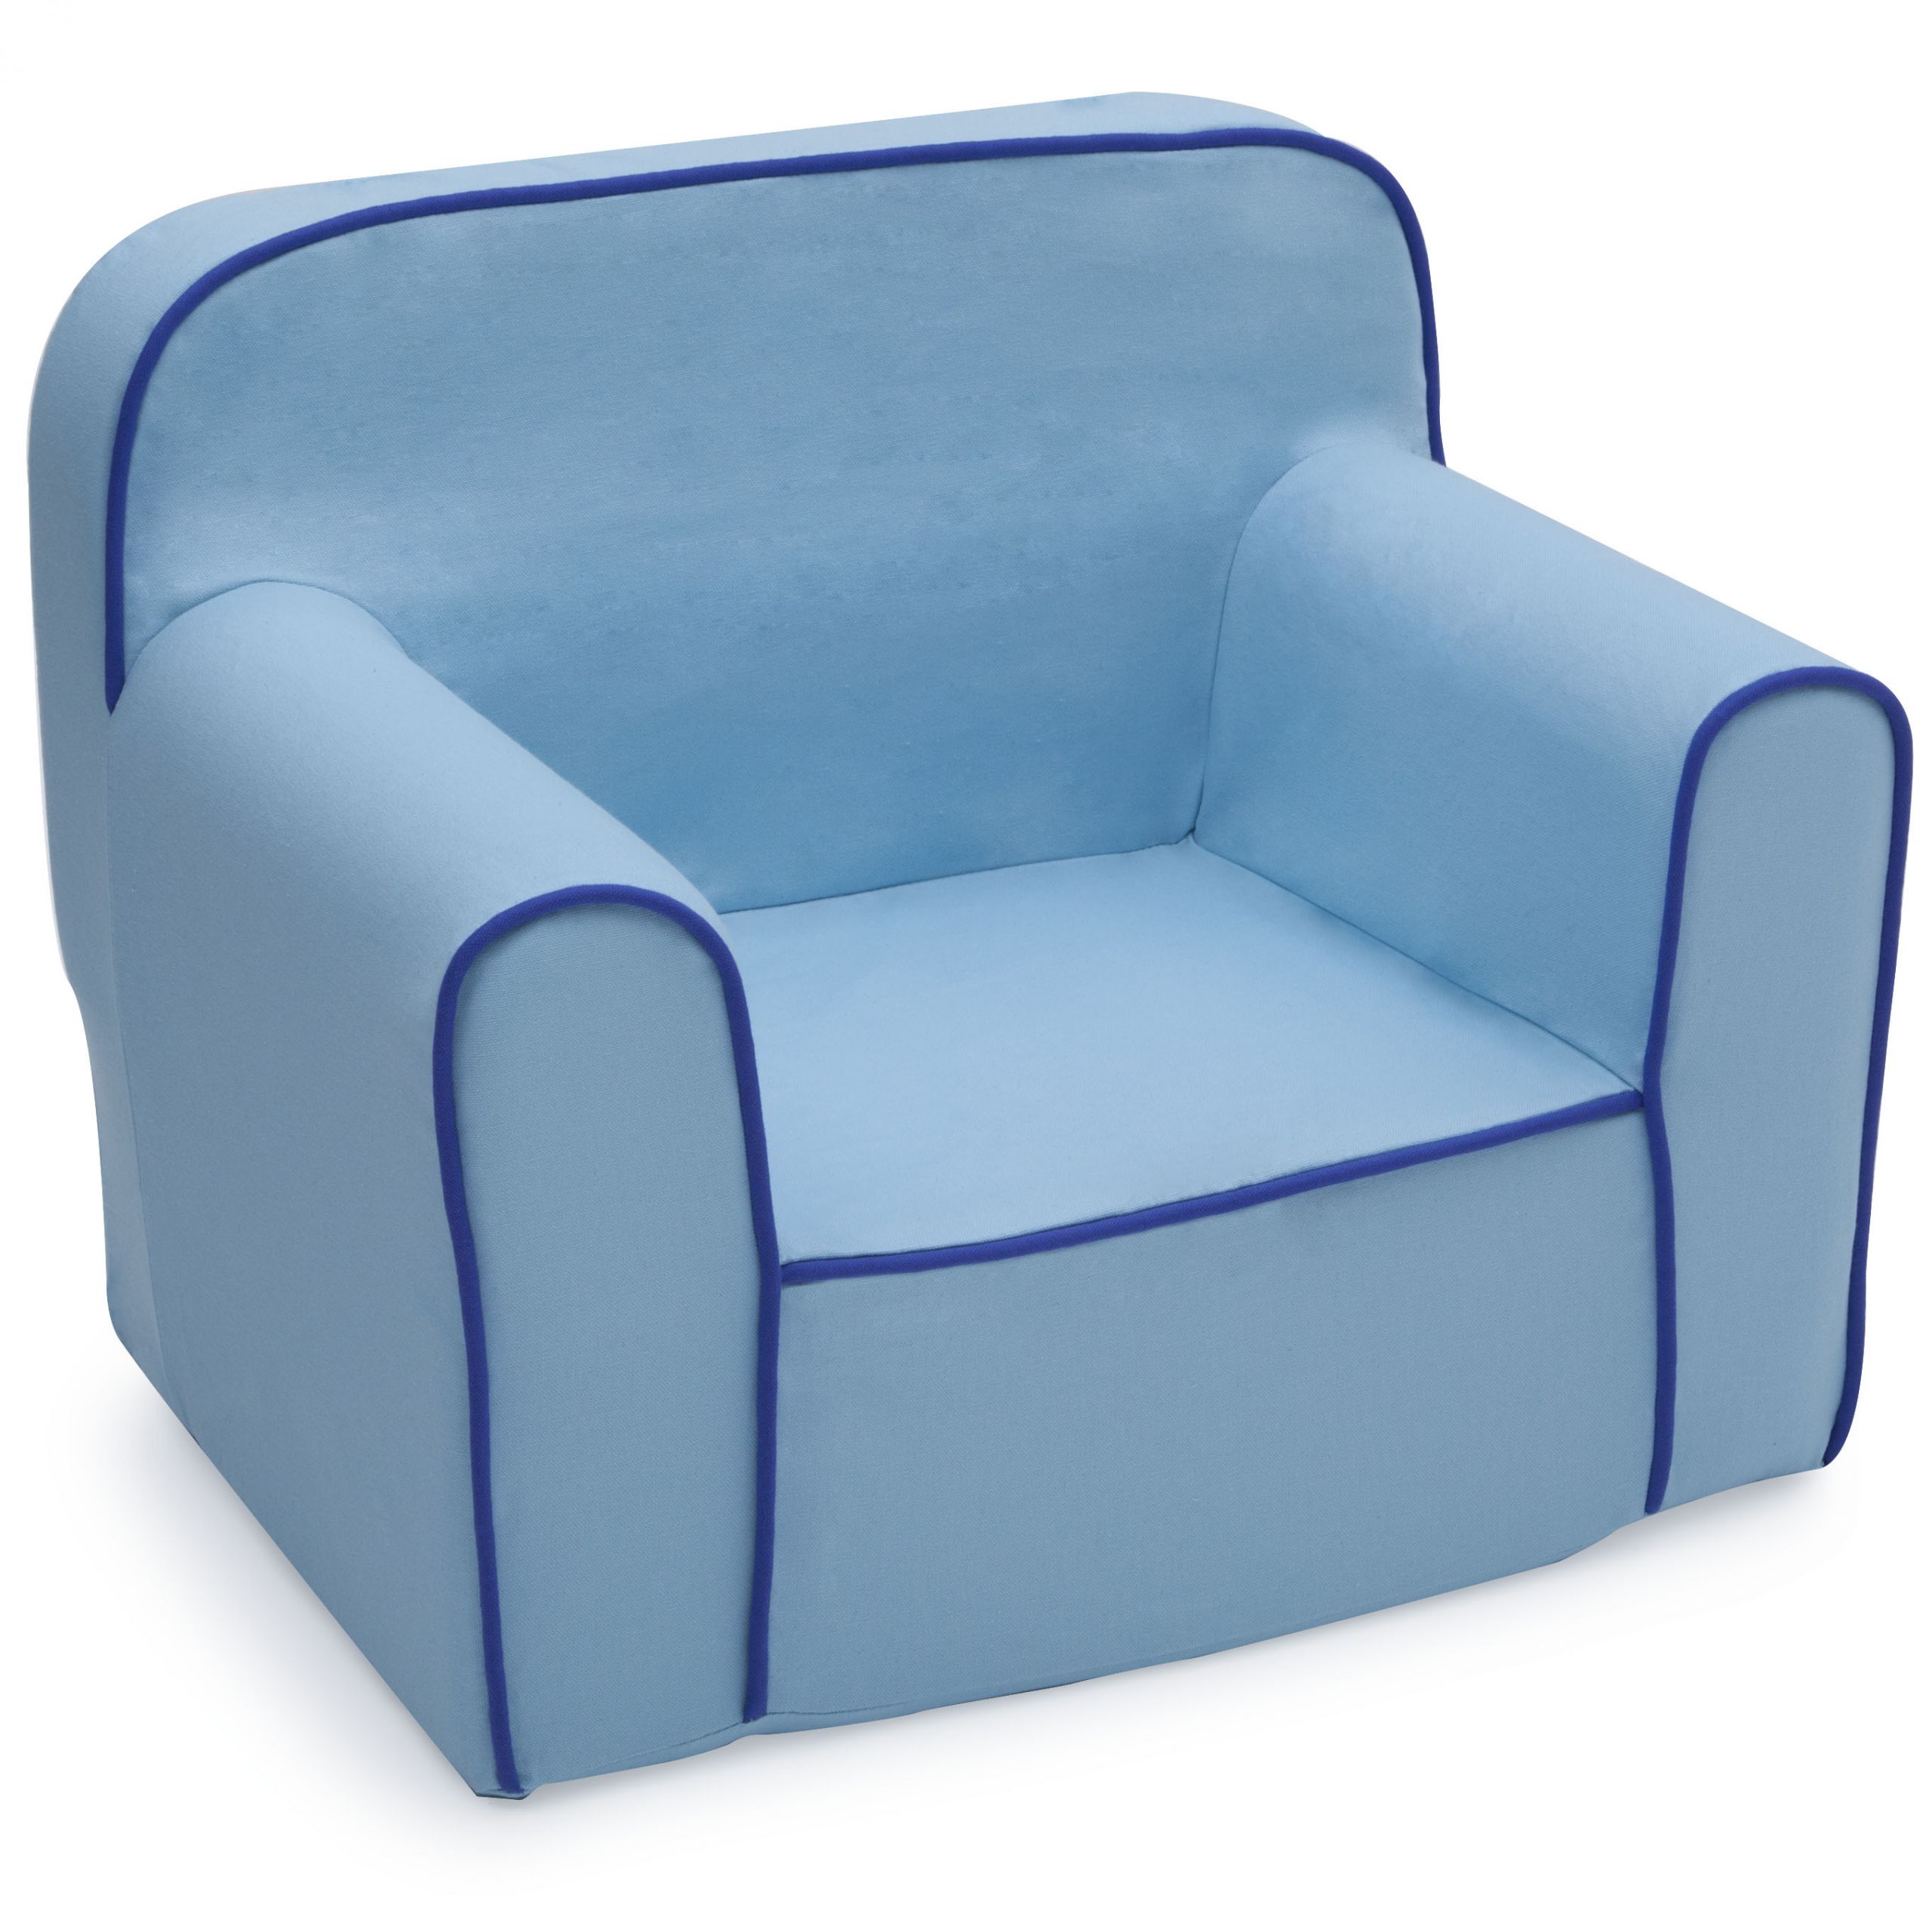 Kids Foam Chair
 Delta Children Foam Snuggle Chair Blue